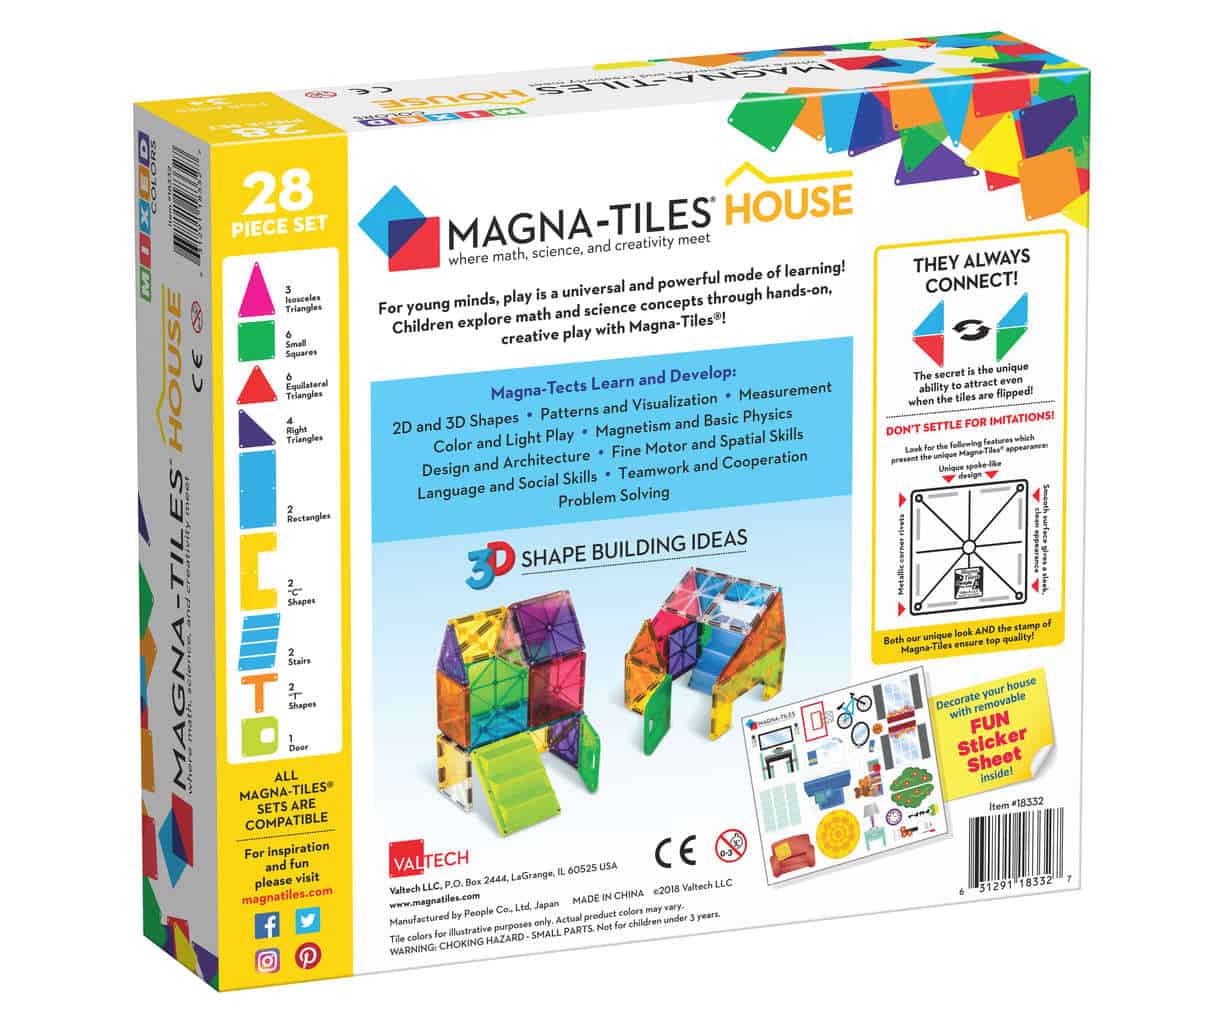 Jogo de Construção Magnético - Magna-Tiles® House 28-Peças